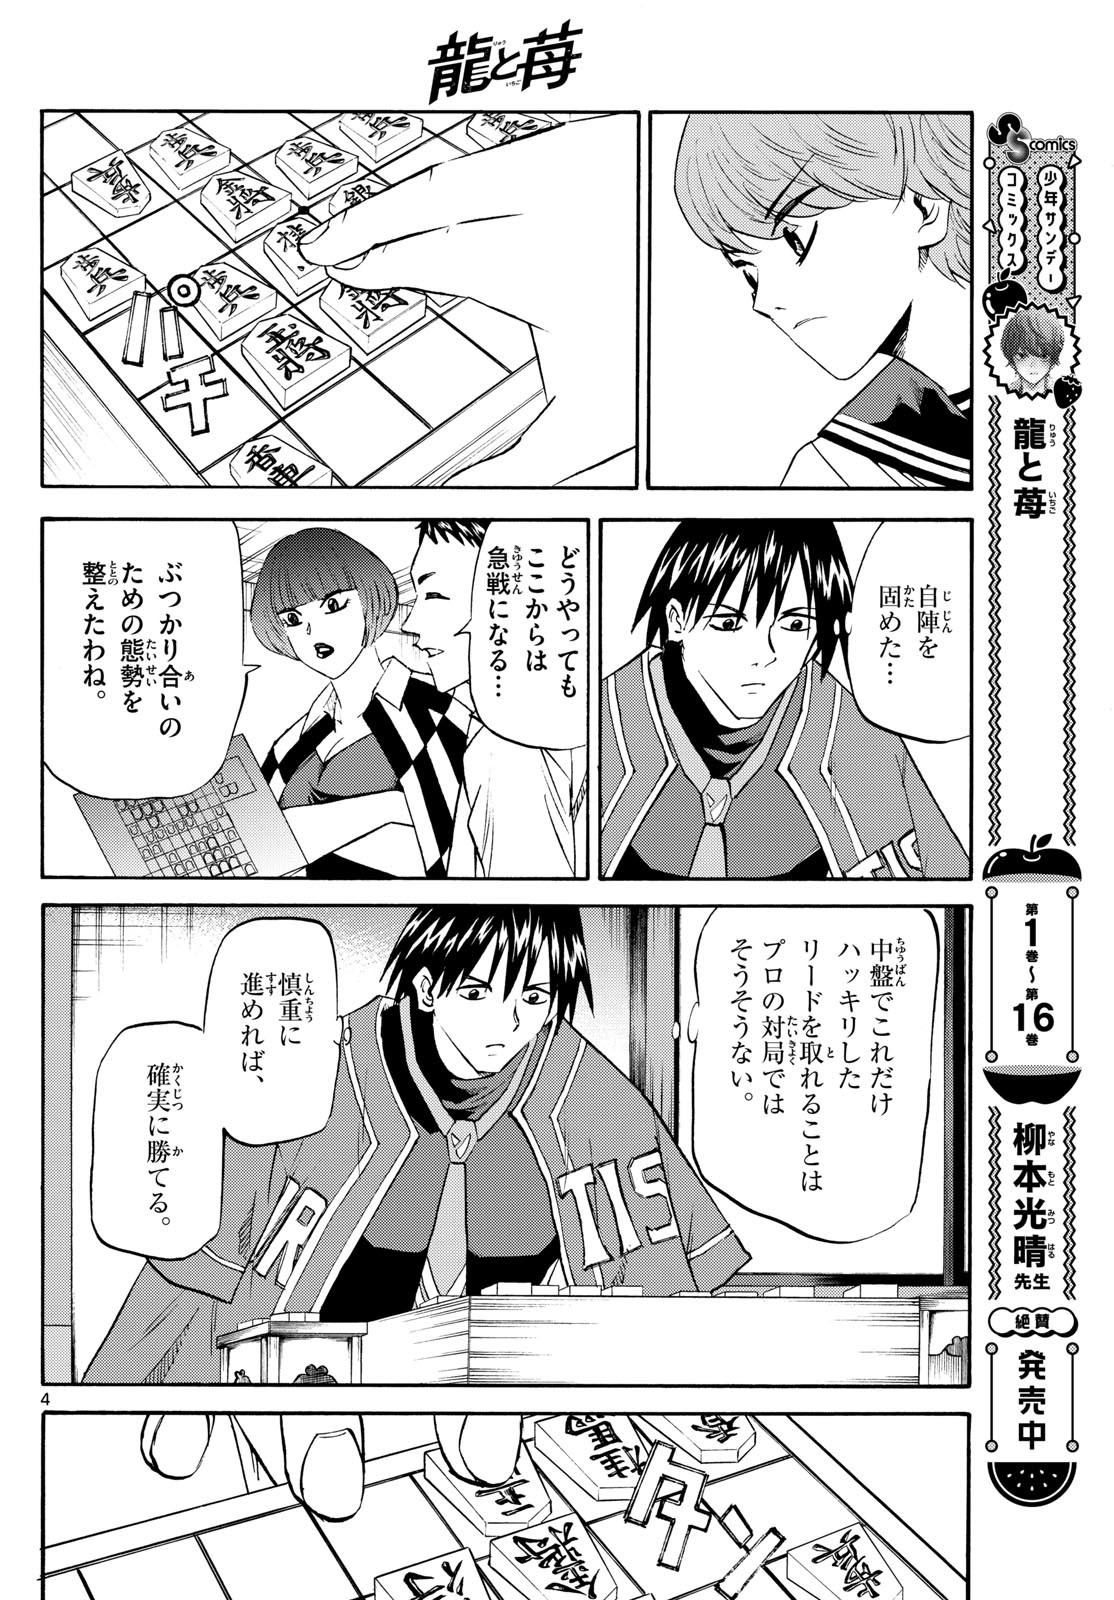 Ryu-to-Ichigo - Chapter 198 - Page 4